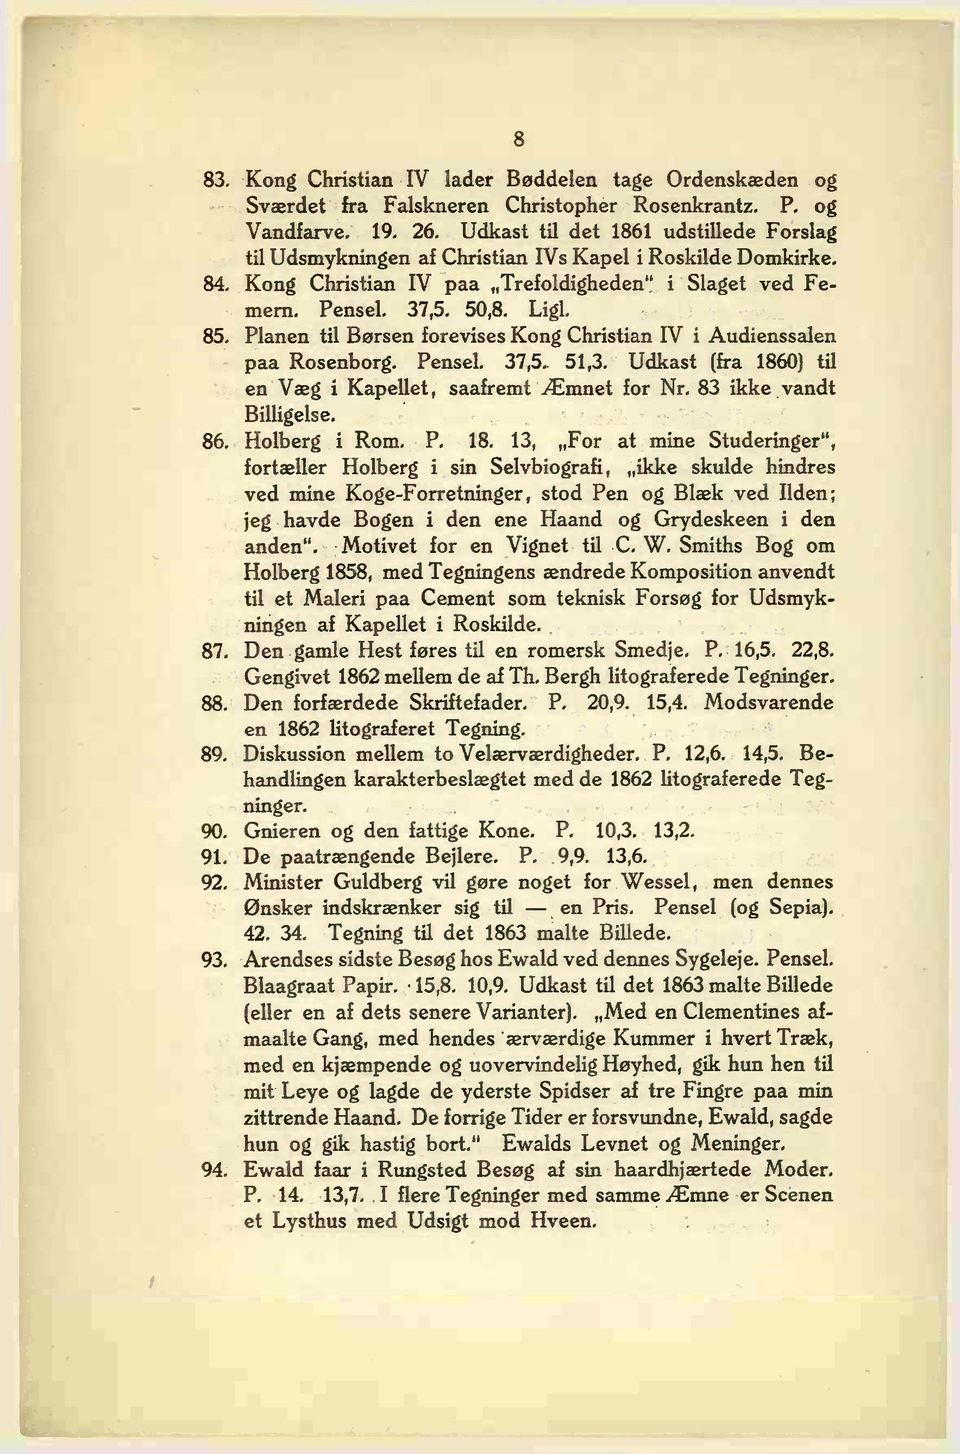 Planen til Børsen forevises Kong Christian IV i Audienssalen paa Rosenborg. Pensel. 37,5. 51,3. Udkast (fra 1860) til en Væg i Kapellet, saafremt Æmnet for Nr. 83 ikke vandt Billigelse. 86.